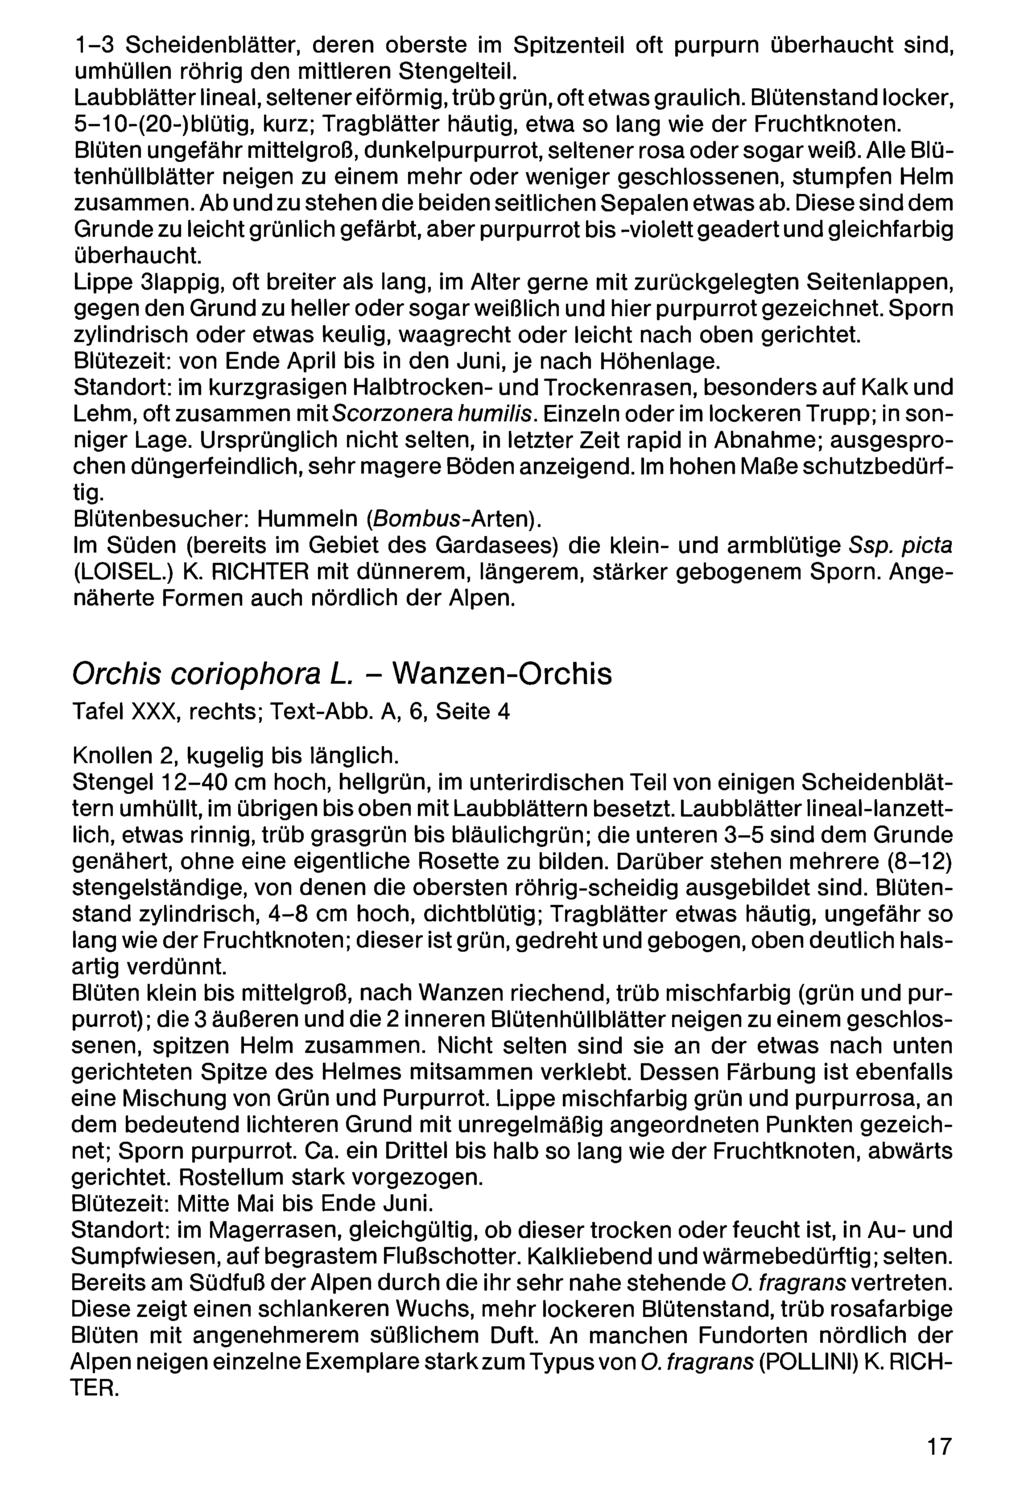 1-3 Scheidenblätter, Zool.-Bot. deren Ges. oberste Österreich, Austria; im download Spitzenteil unter www.biologiezentrum.at oft purpurn überhaucht sind, umhüllen röhrig den mittleren Stengelteil.